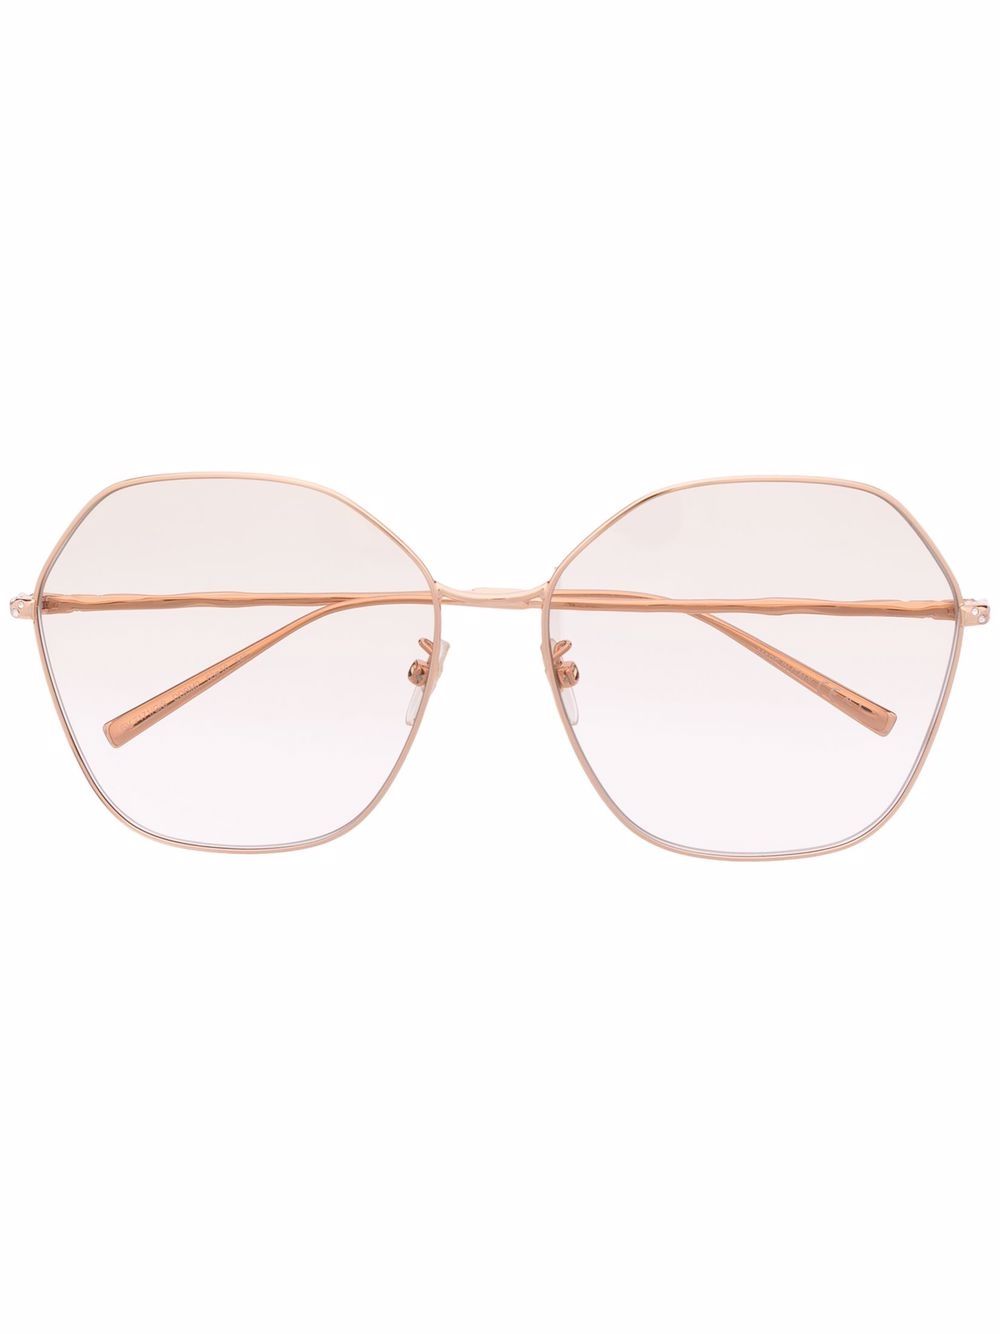 фото Givenchy eyewear солнцезащитные очки в массивной оправе